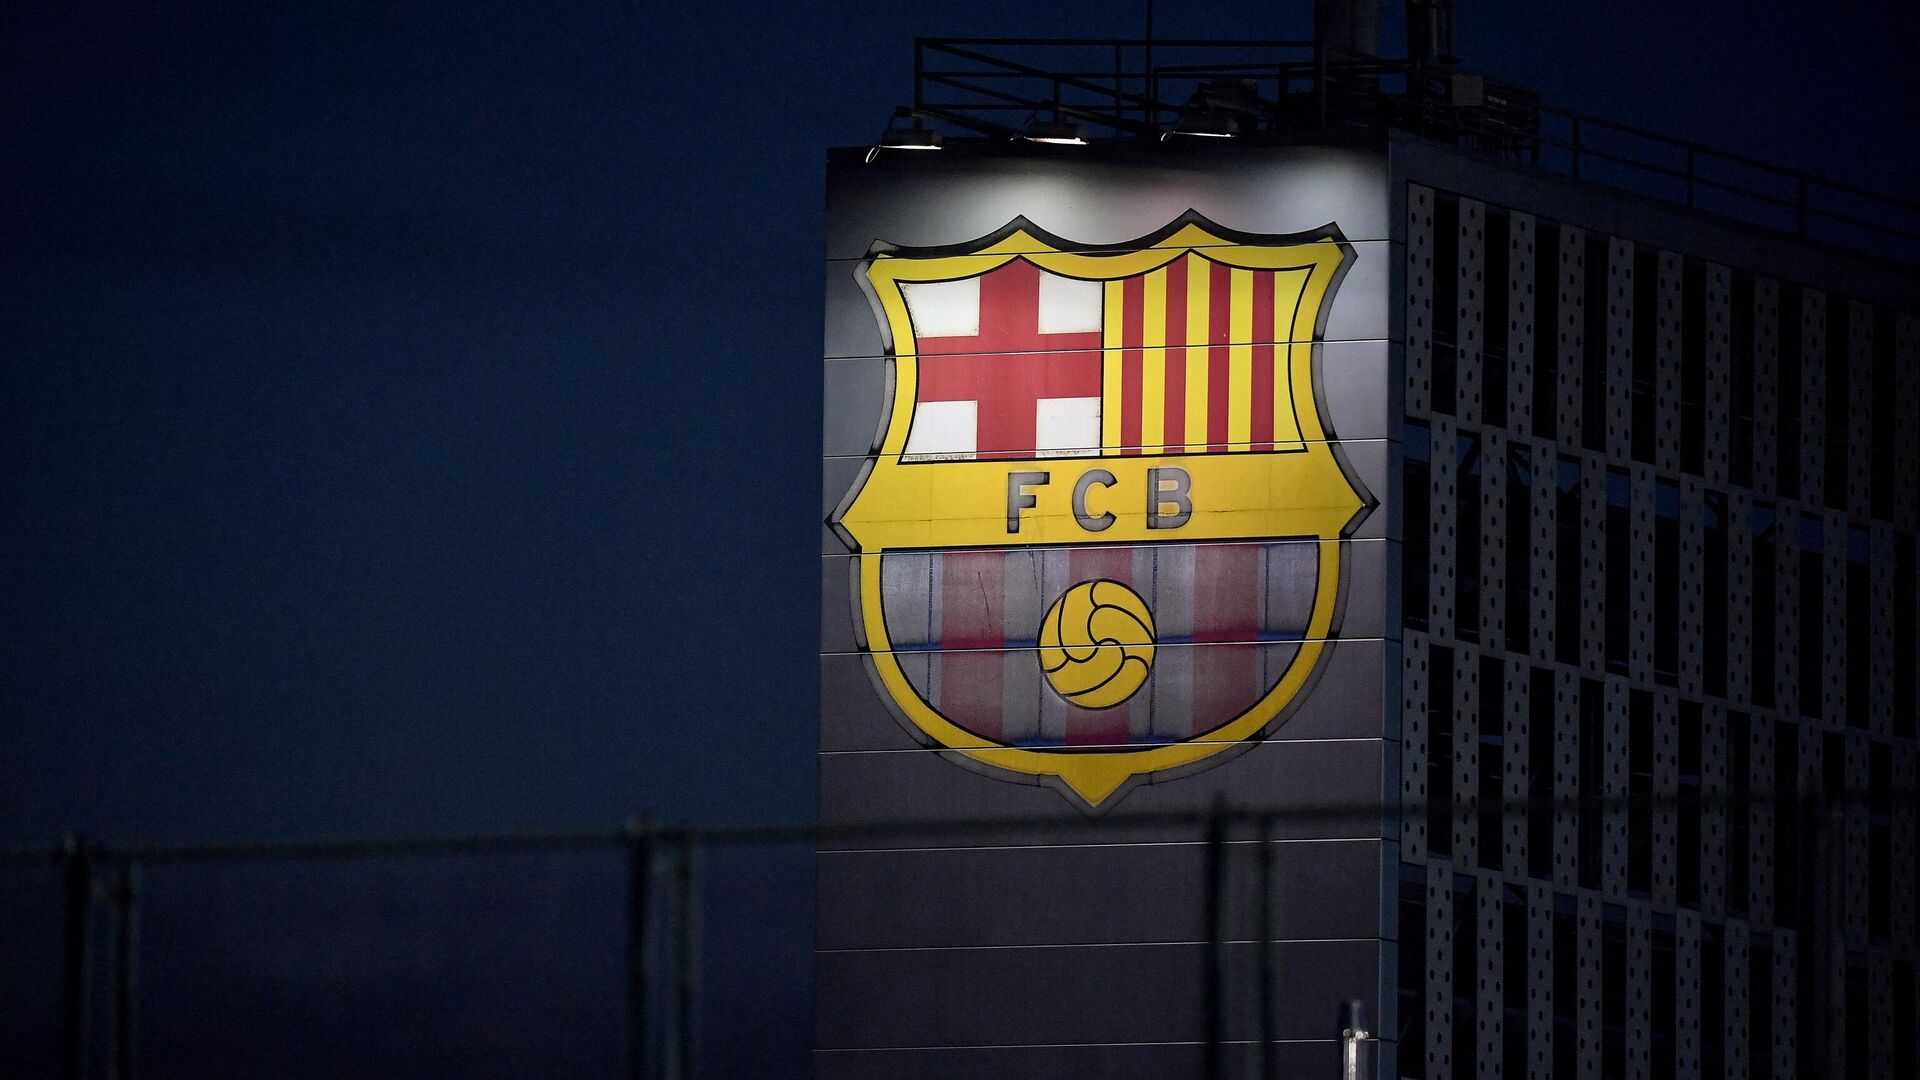 fk Barselon kak rabotaet klub ekonomika transfera model dohody rashody perspektivy